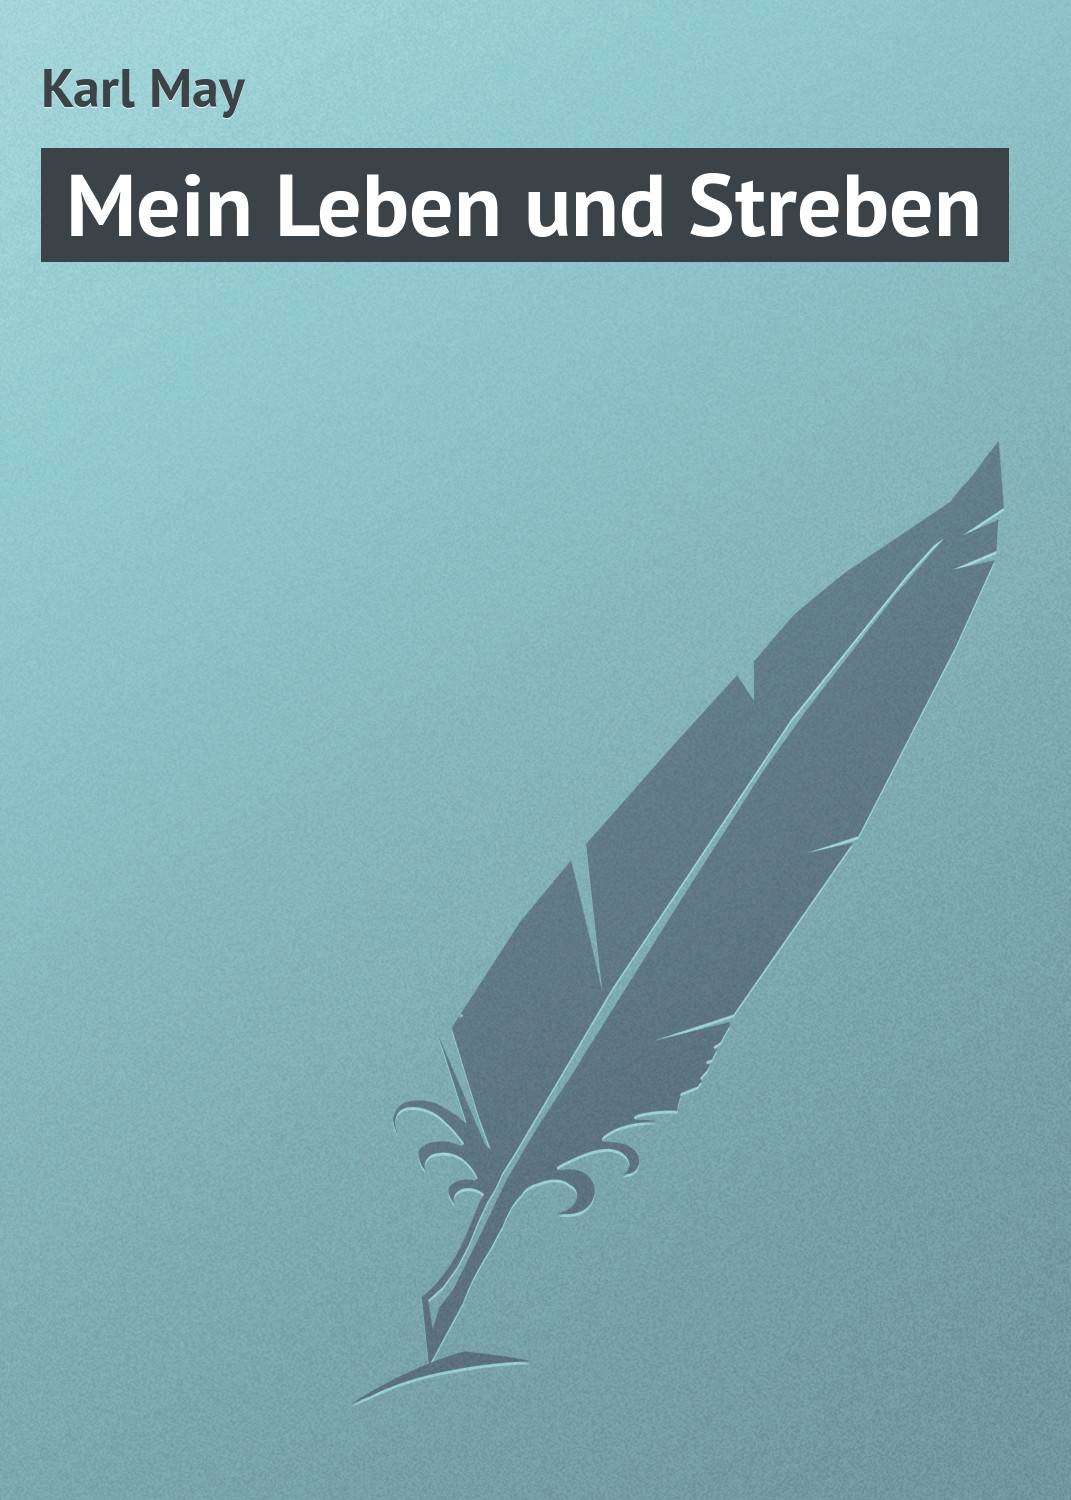 Книга Mein Leben und Streben из серии , созданная Karl May, может относится к жанру Зарубежная старинная литература, Зарубежная классика. Стоимость электронной книги Mein Leben und Streben с идентификатором 21104590 составляет 5.99 руб.